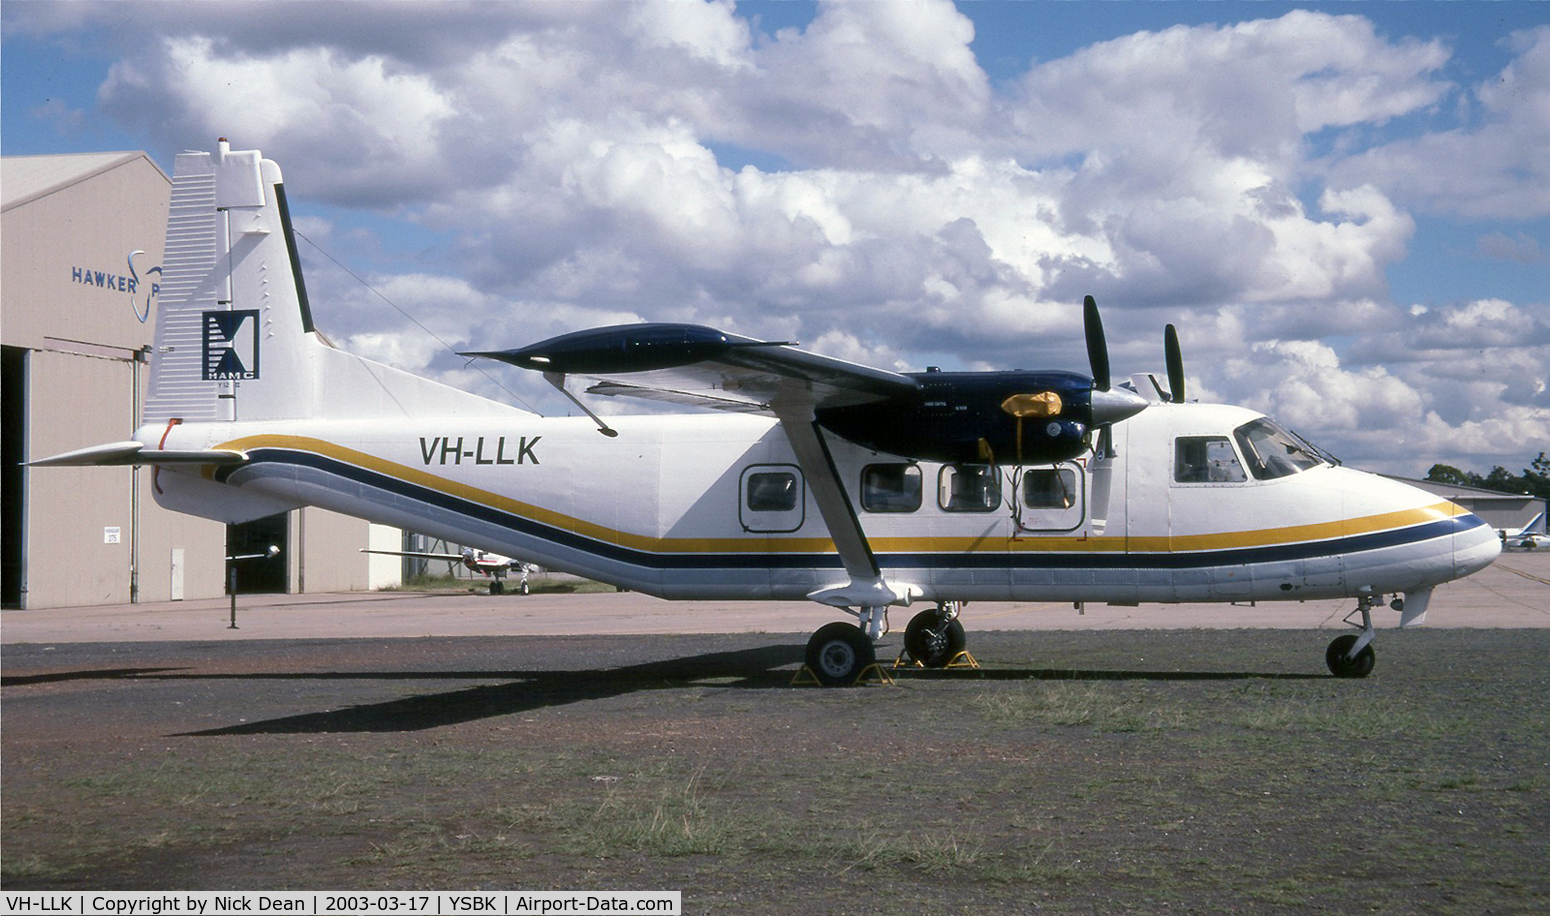 VH-LLK, 1993 Yunshuji Y-12 C/N 0048, YSBK